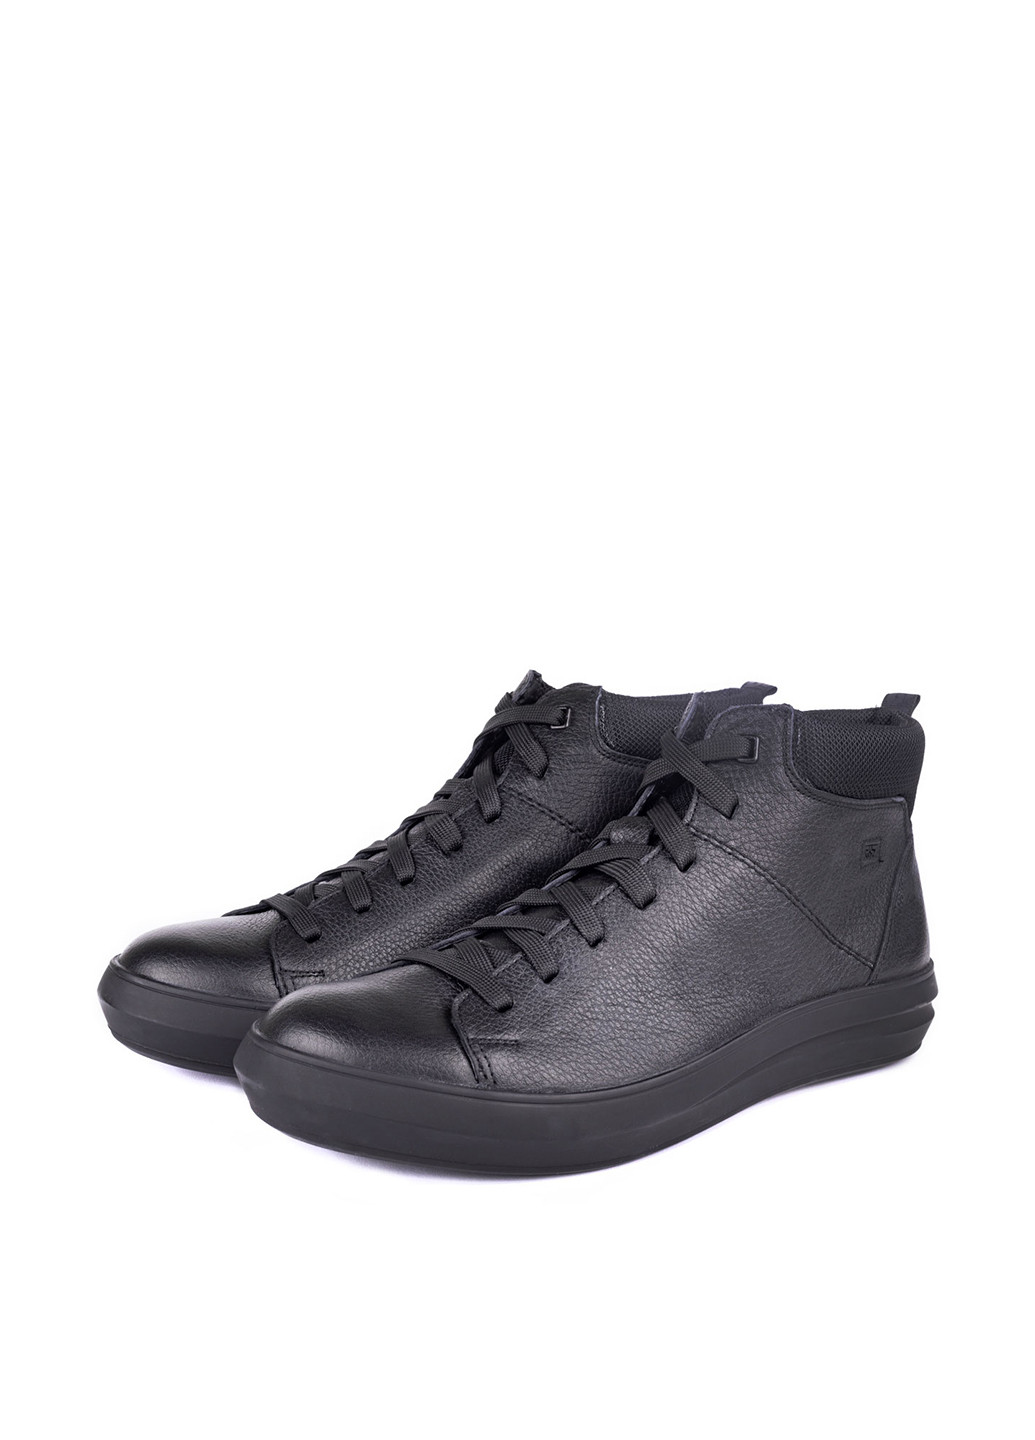 Черные осенние ботинки Mida